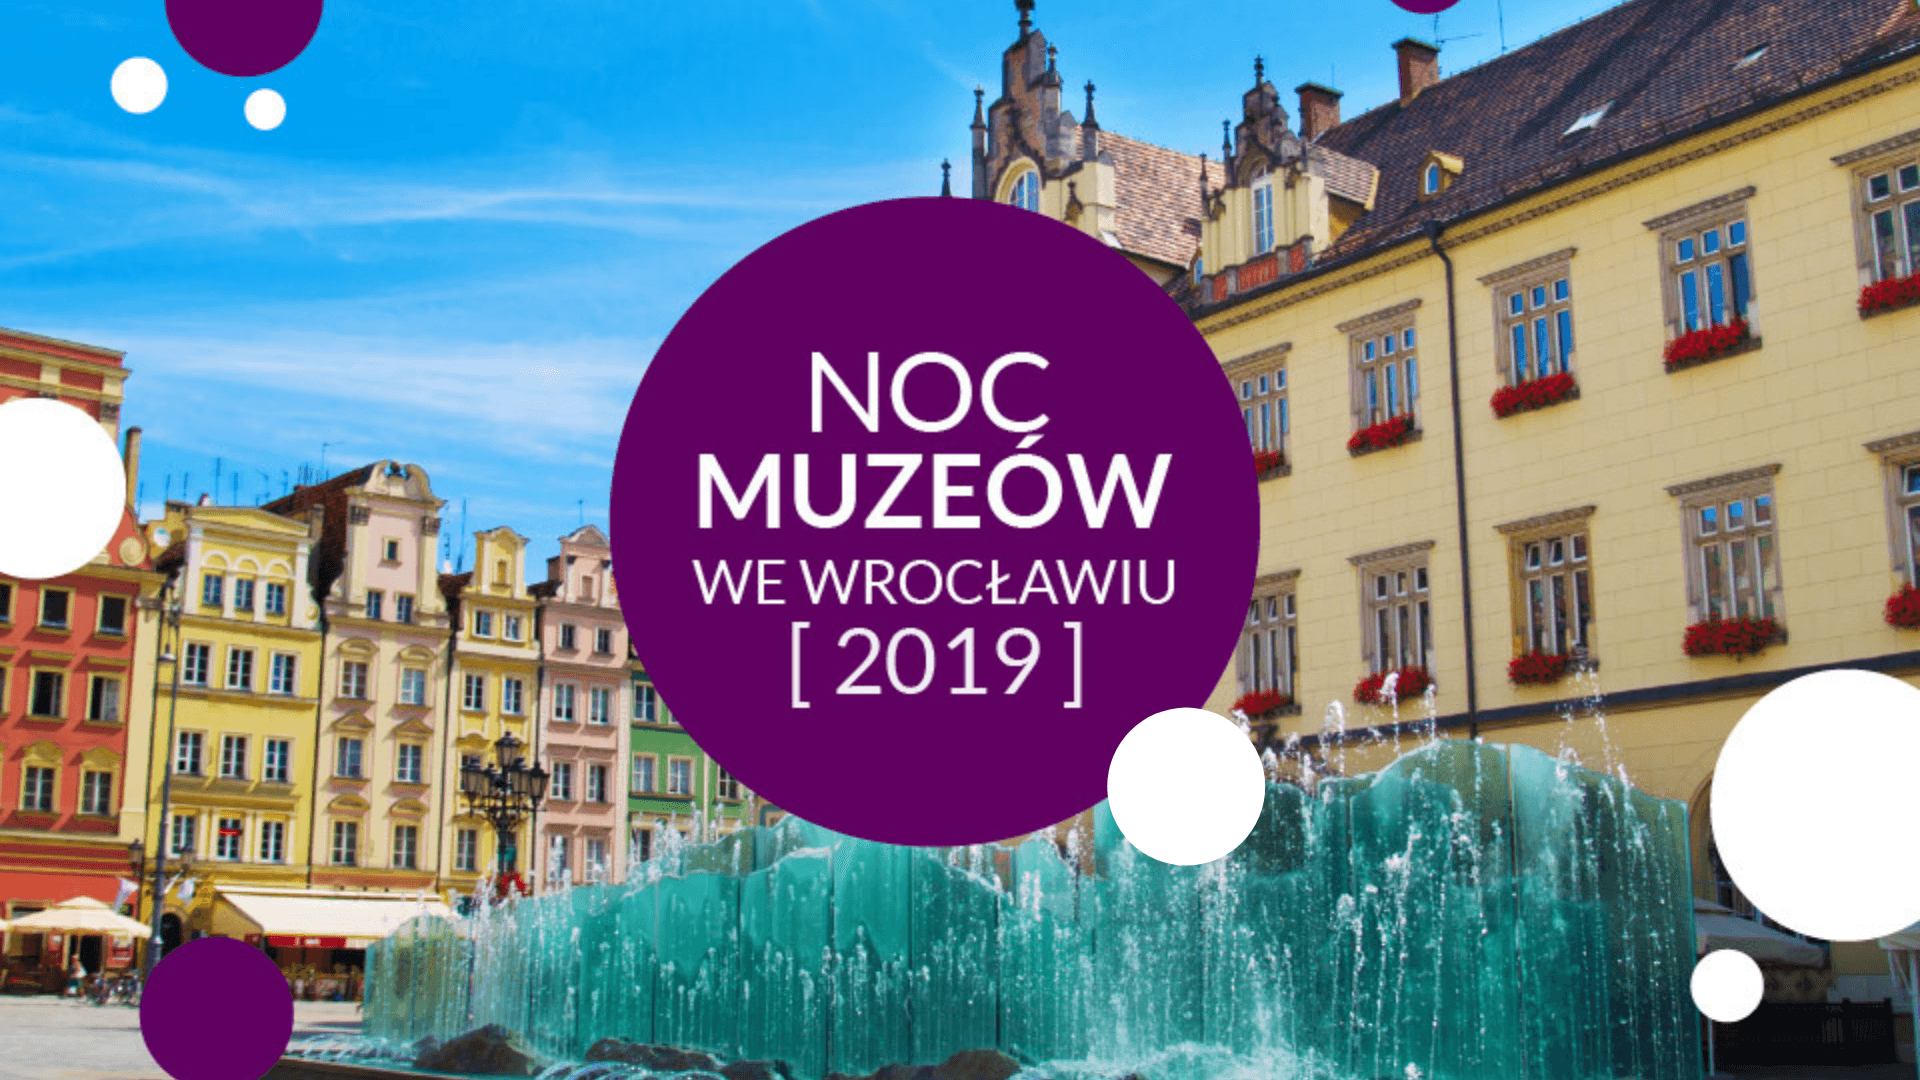 Ніч музеїв 2019 у Вроцлаві